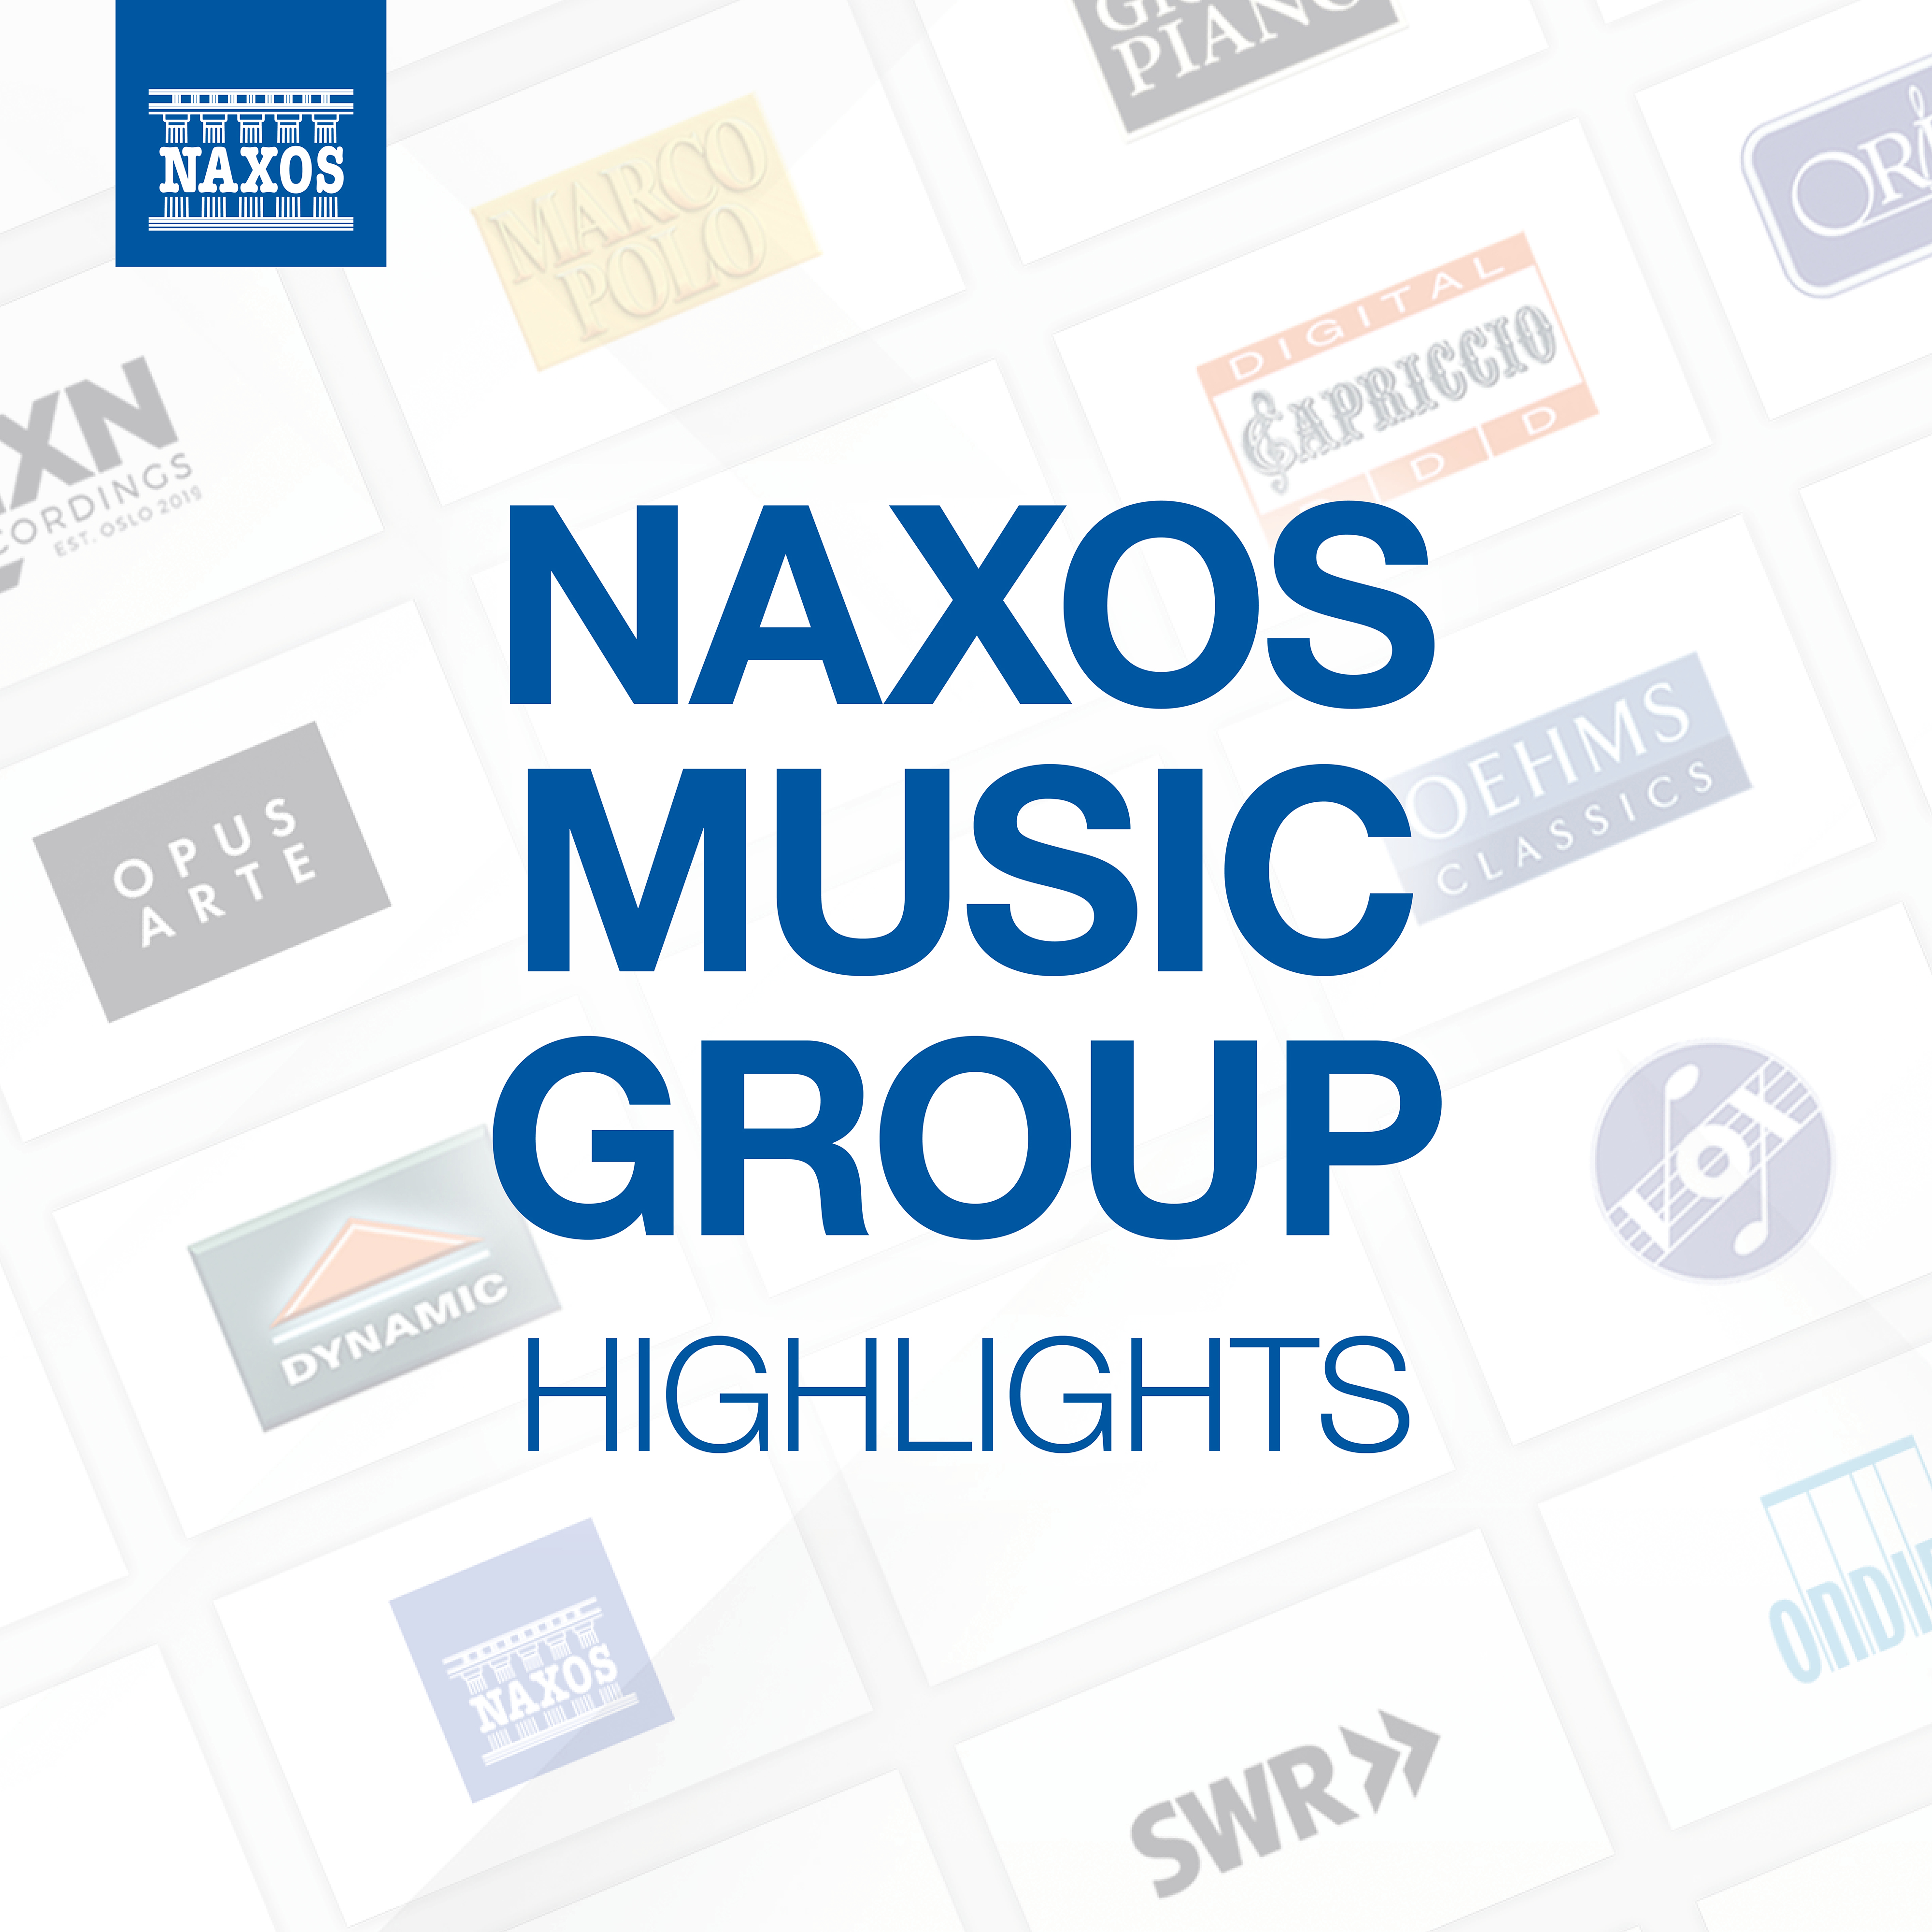 Naxos Music Group Highlights Various